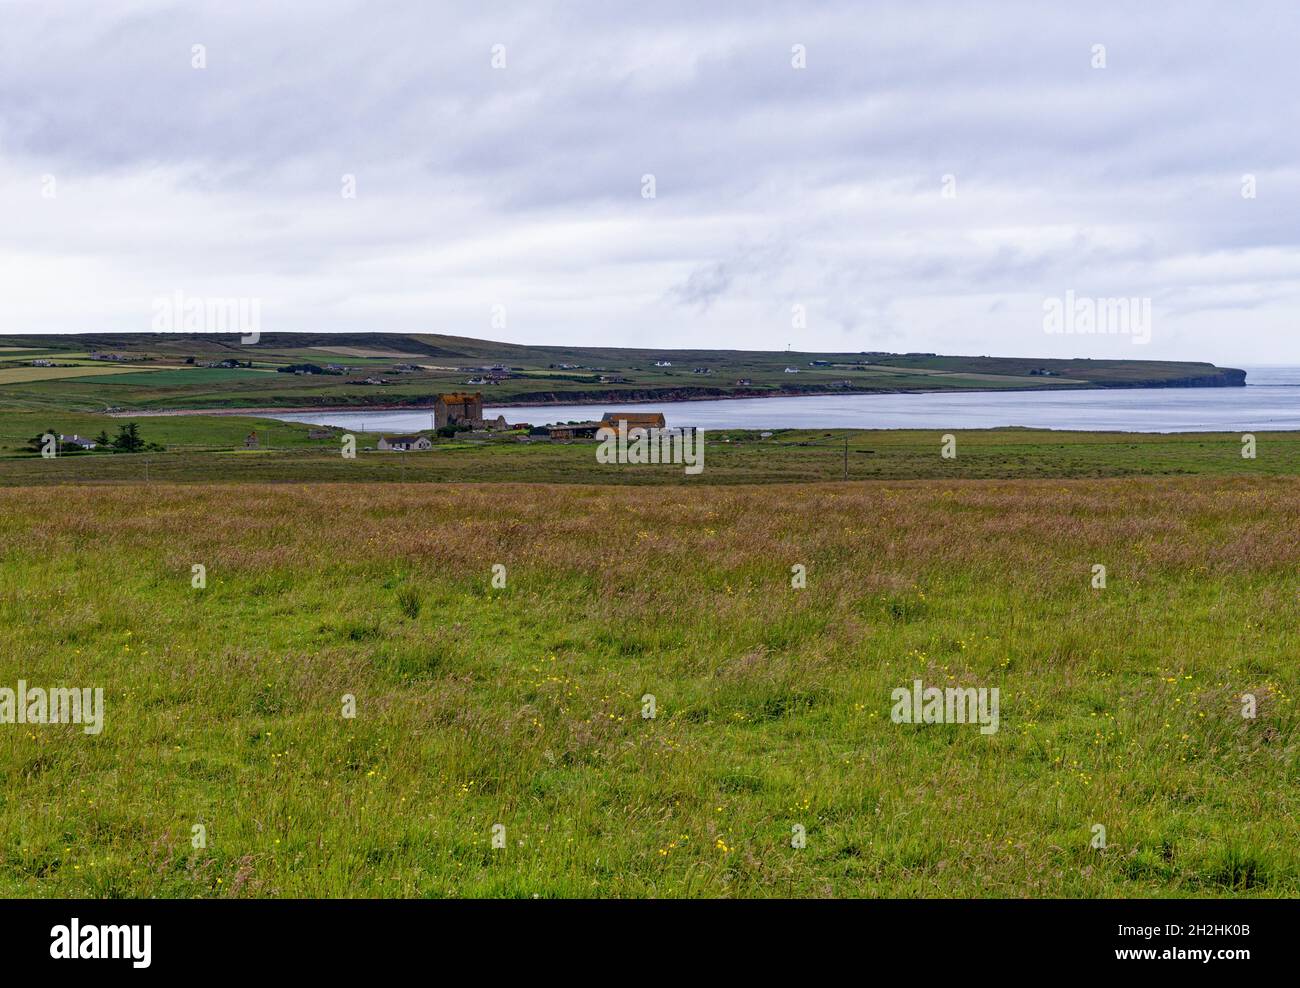 Landscapes of the area surrounding John O' Groats - Scotland, UK, Europe Stock Photo